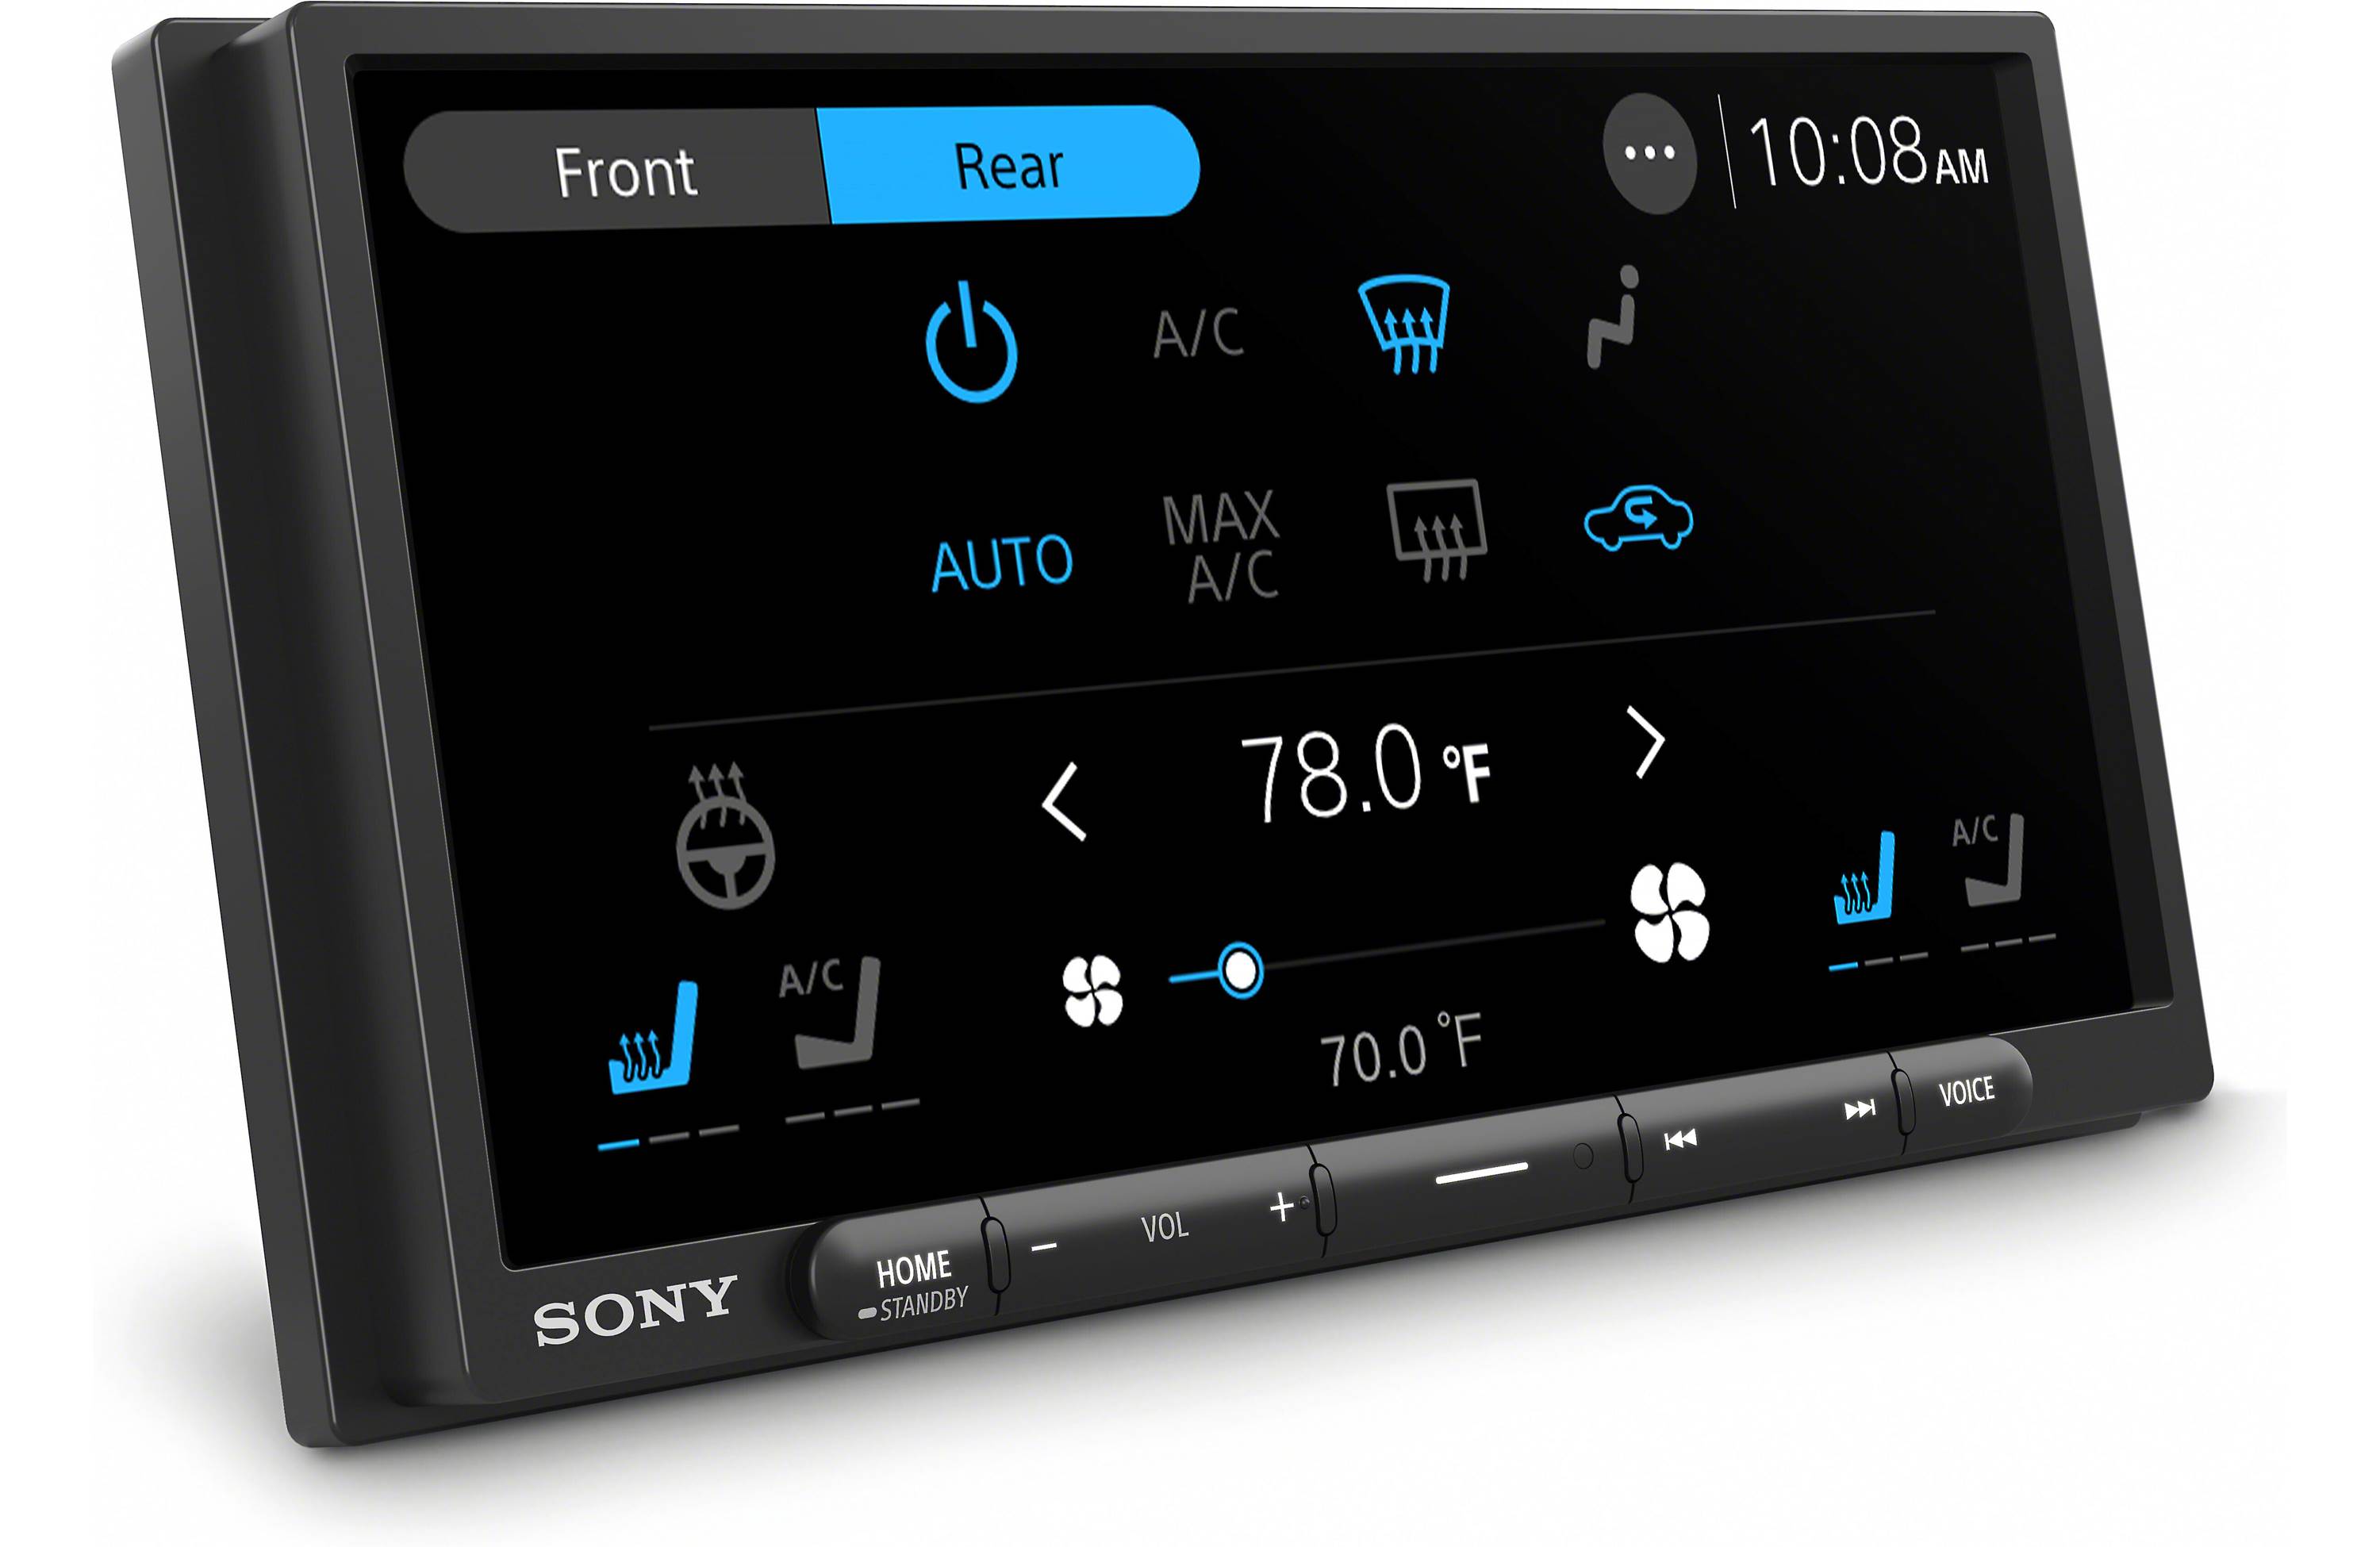 Sony XAV-AX4000 17.6 cm (6.95 Inch) Touchscreen Car Digital Multimedia Receiver